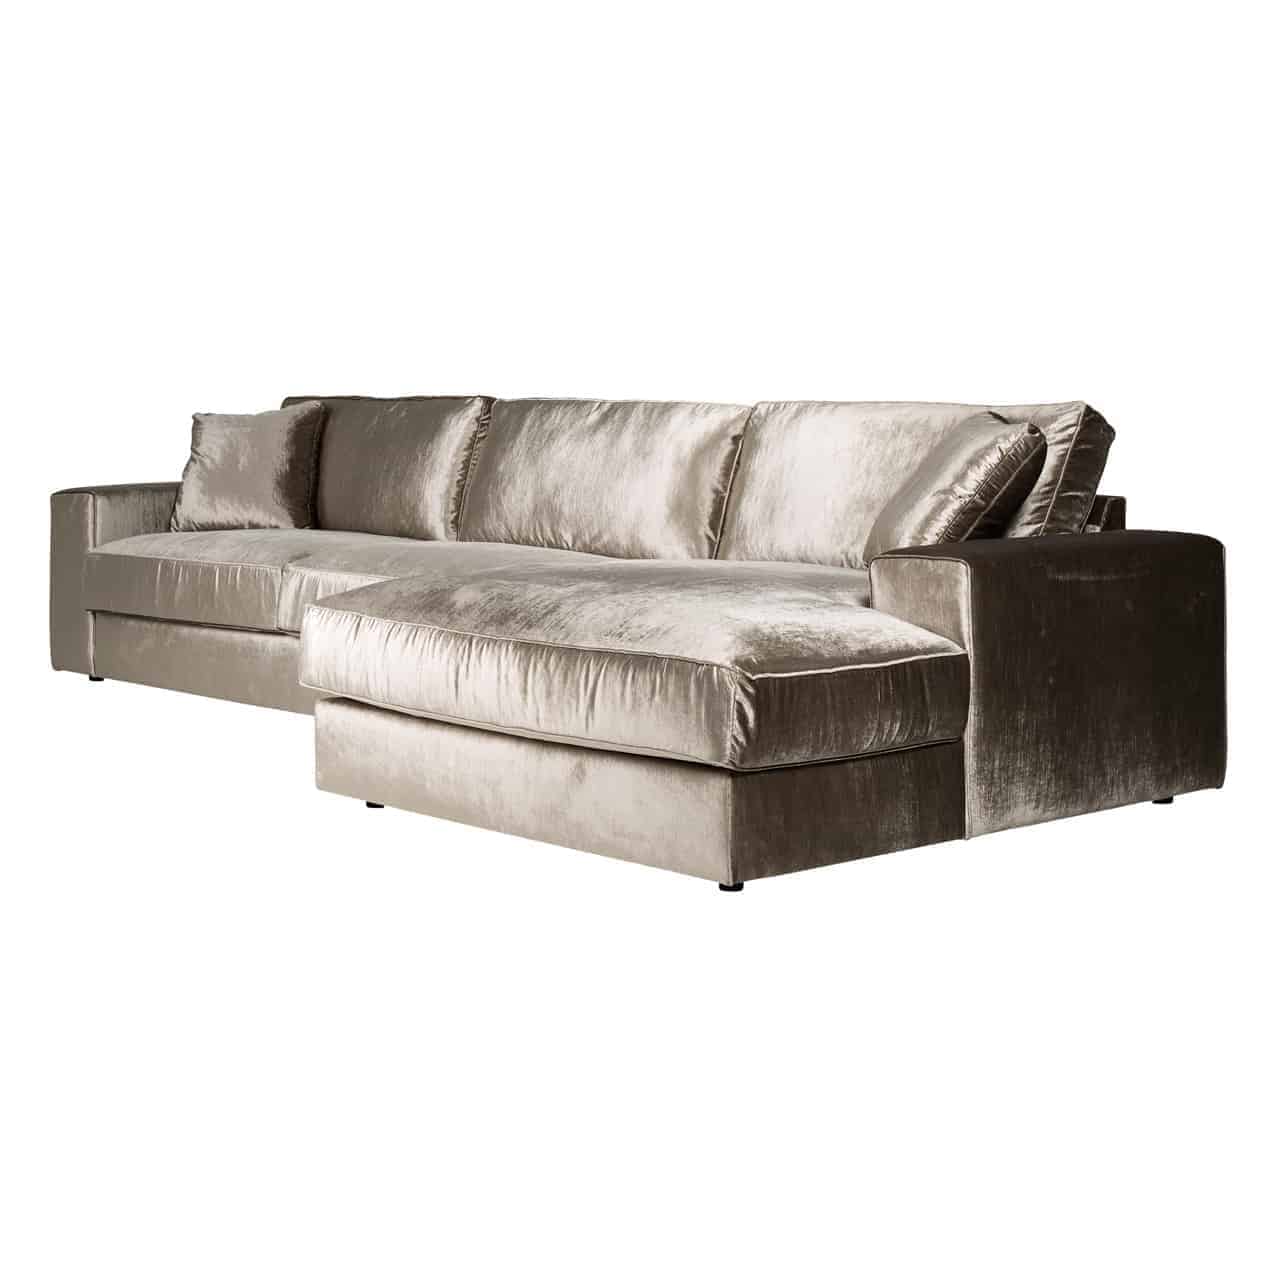 Moderne Sofa Lounge mit khakifarbenem, glänzenden Bezug; gerade, niedrige Armlehnen; zwei dicke Sitz,- und Rückenpolster, zwei quadratische Kissen in den Ecken, rechts eine breite Ottomane als Verlängerung.